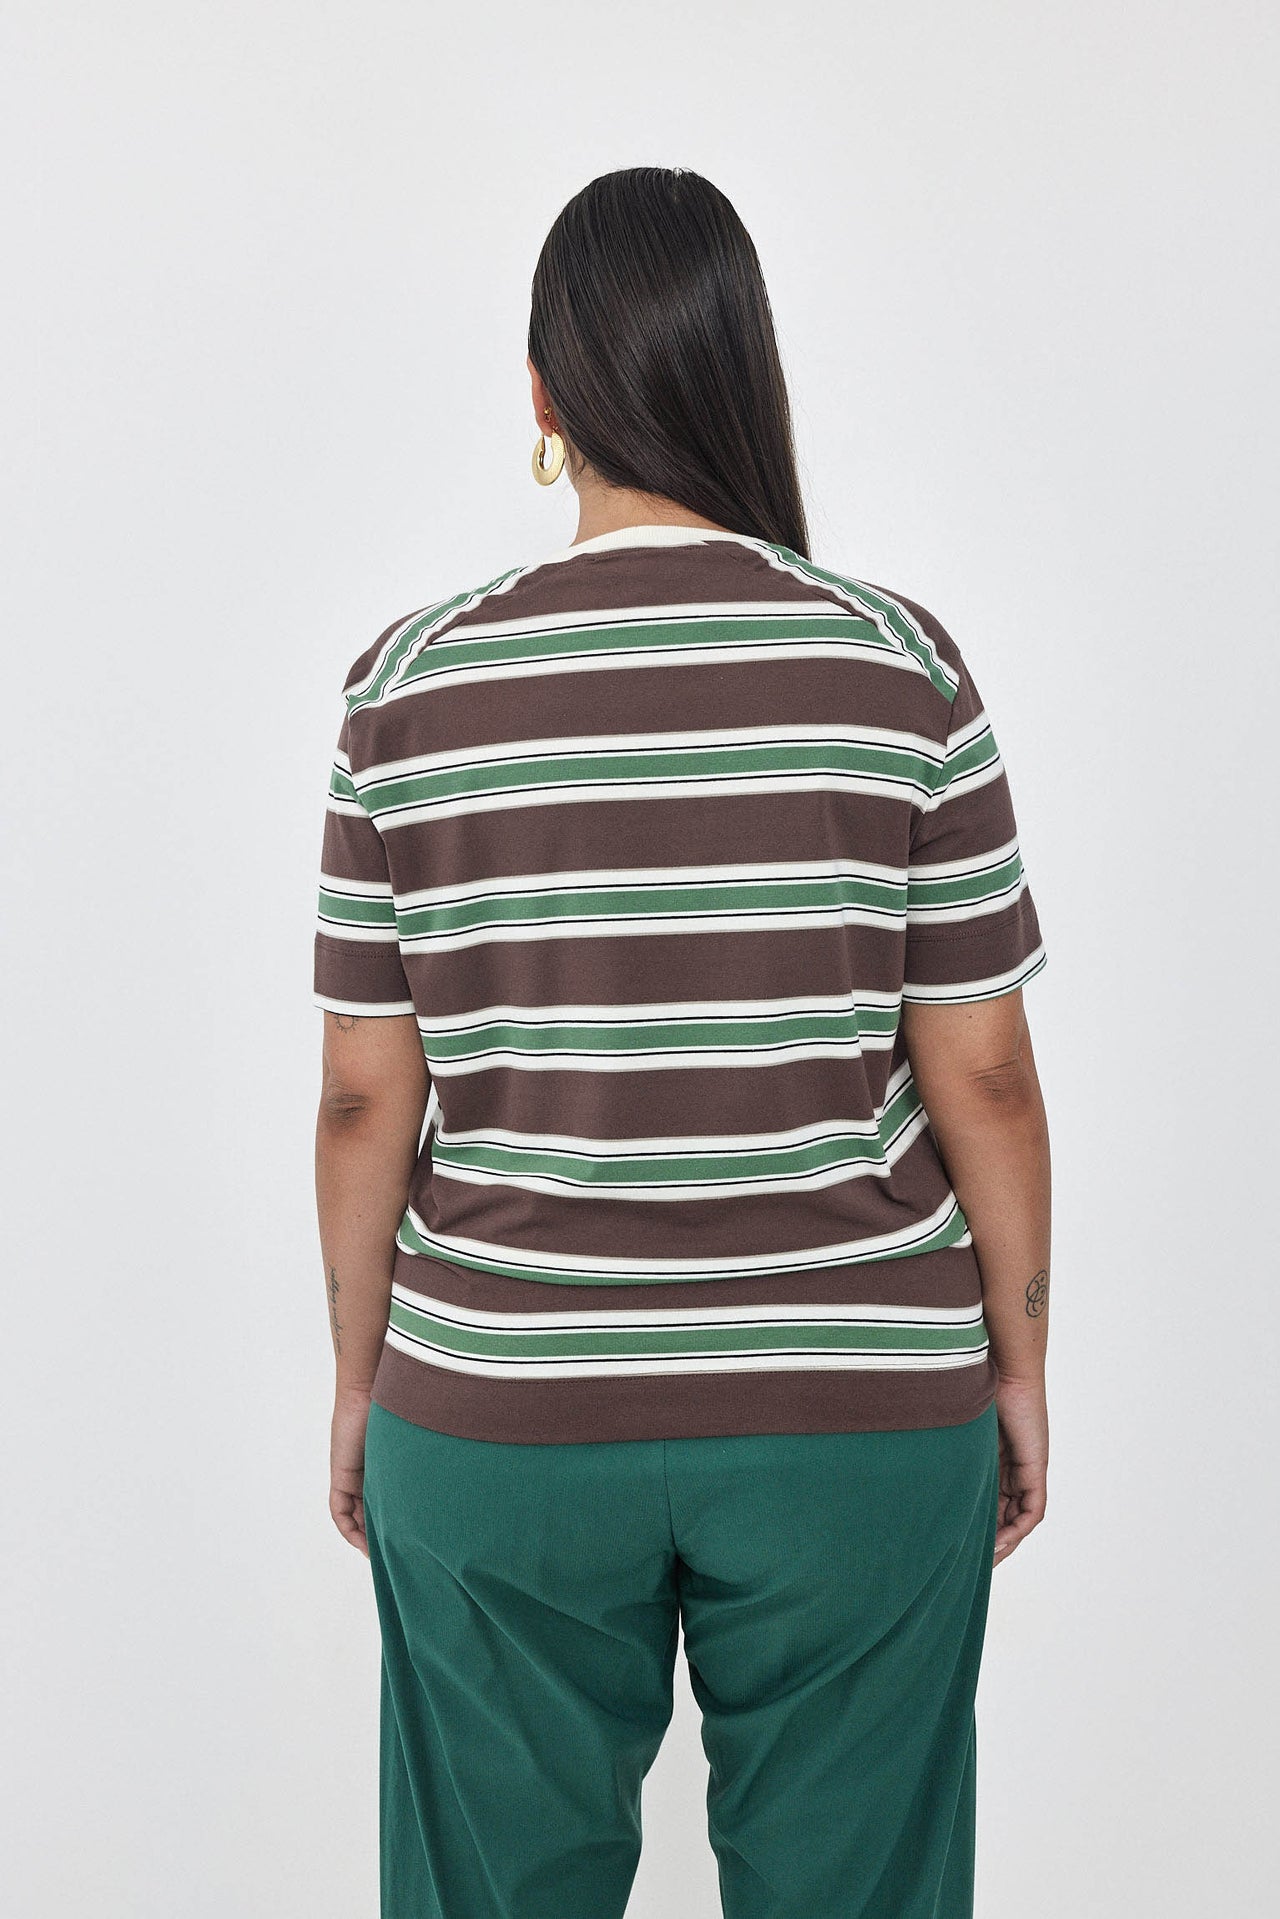 CHER T-Shirt S24 (2-3) - Brown / Light Green